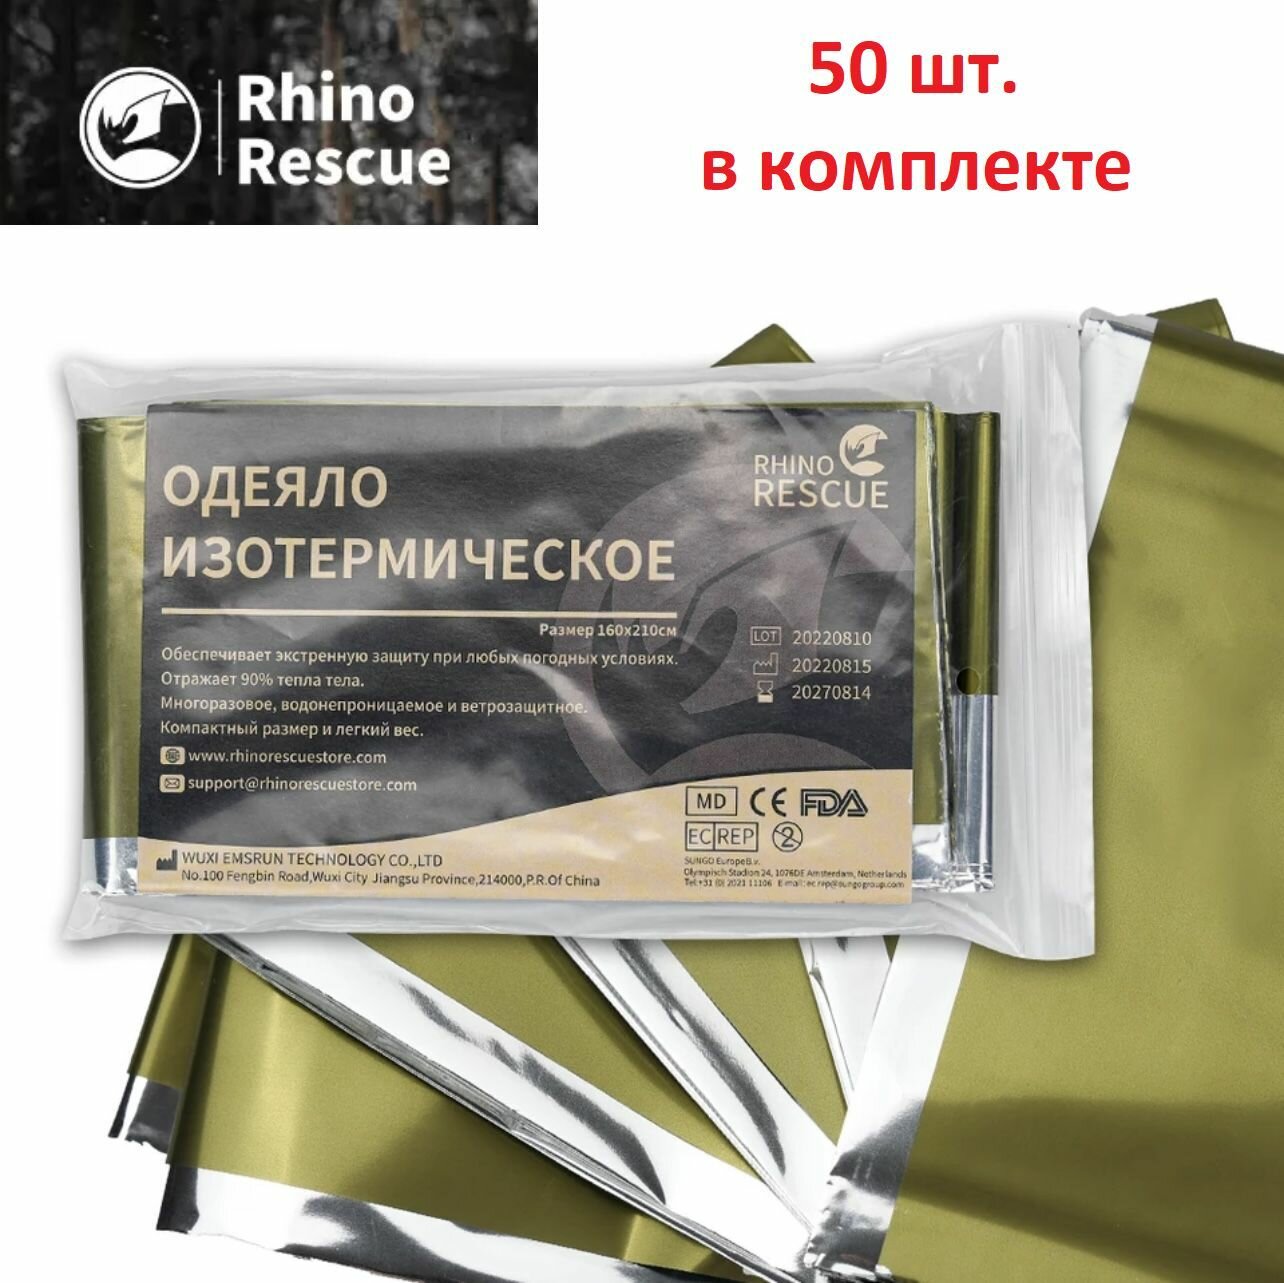 Изотермическое одеяло 160*210 см Rhino Rescue, 50 шт.